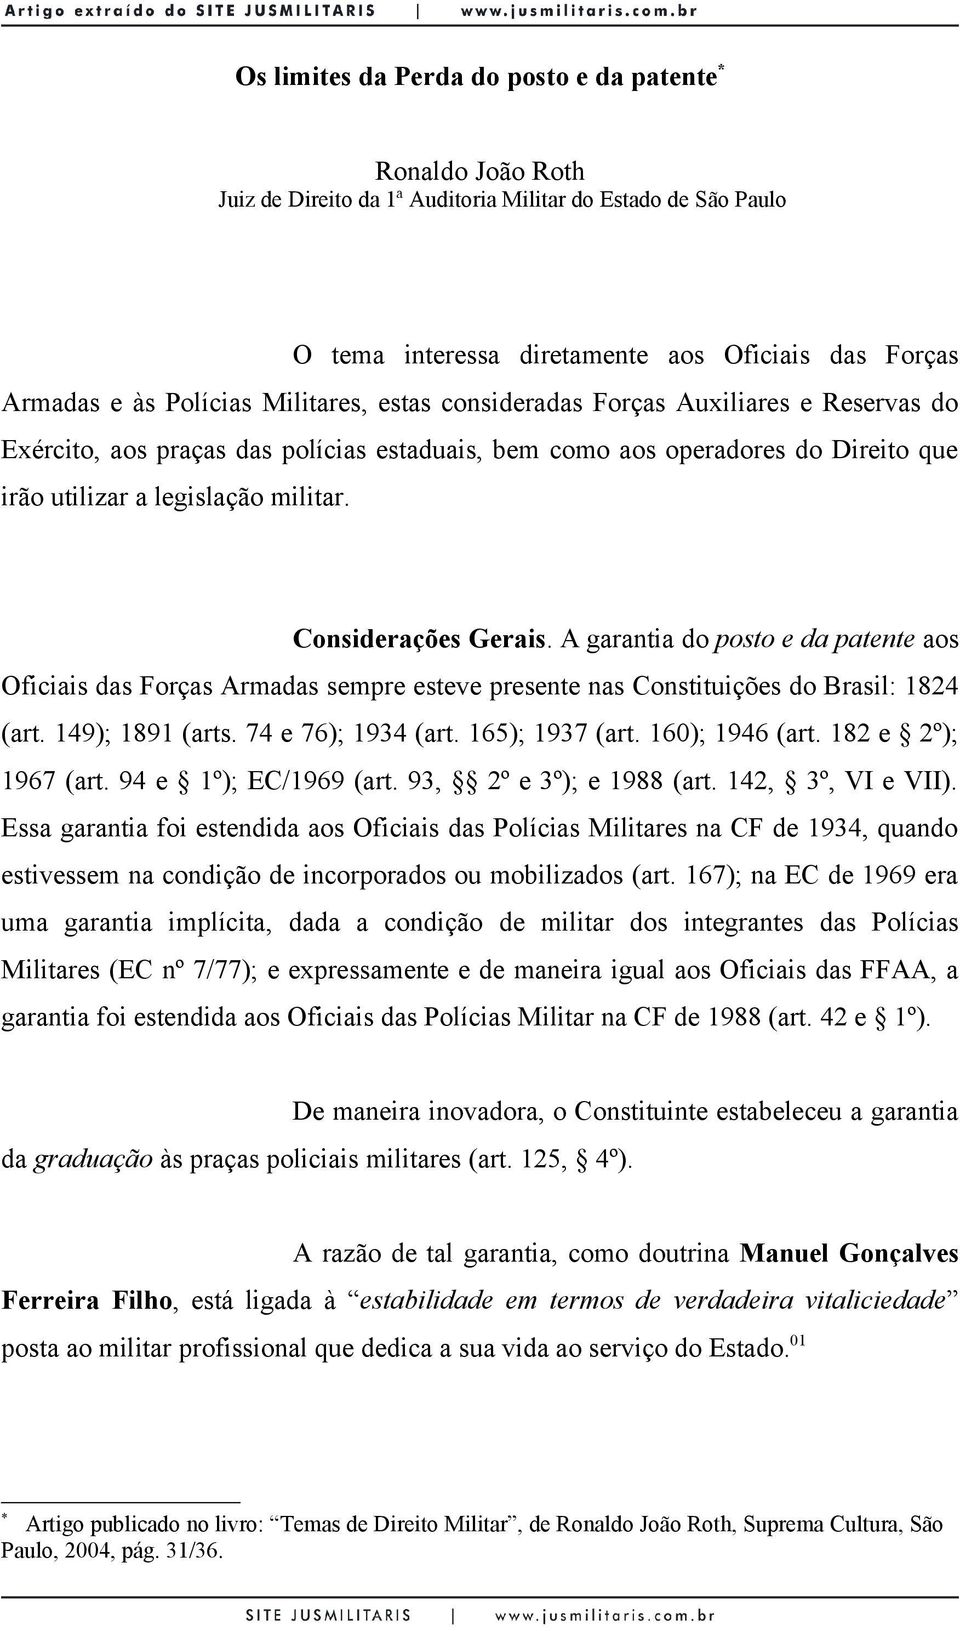 Considerações Gerais. A garantia do posto e da patente aos Oficiais das Forças Armadas sempre esteve presente nas Constituições do Brasil: 1824 (art. 149); 1891 (arts. 74 e 76); 1934 (art.